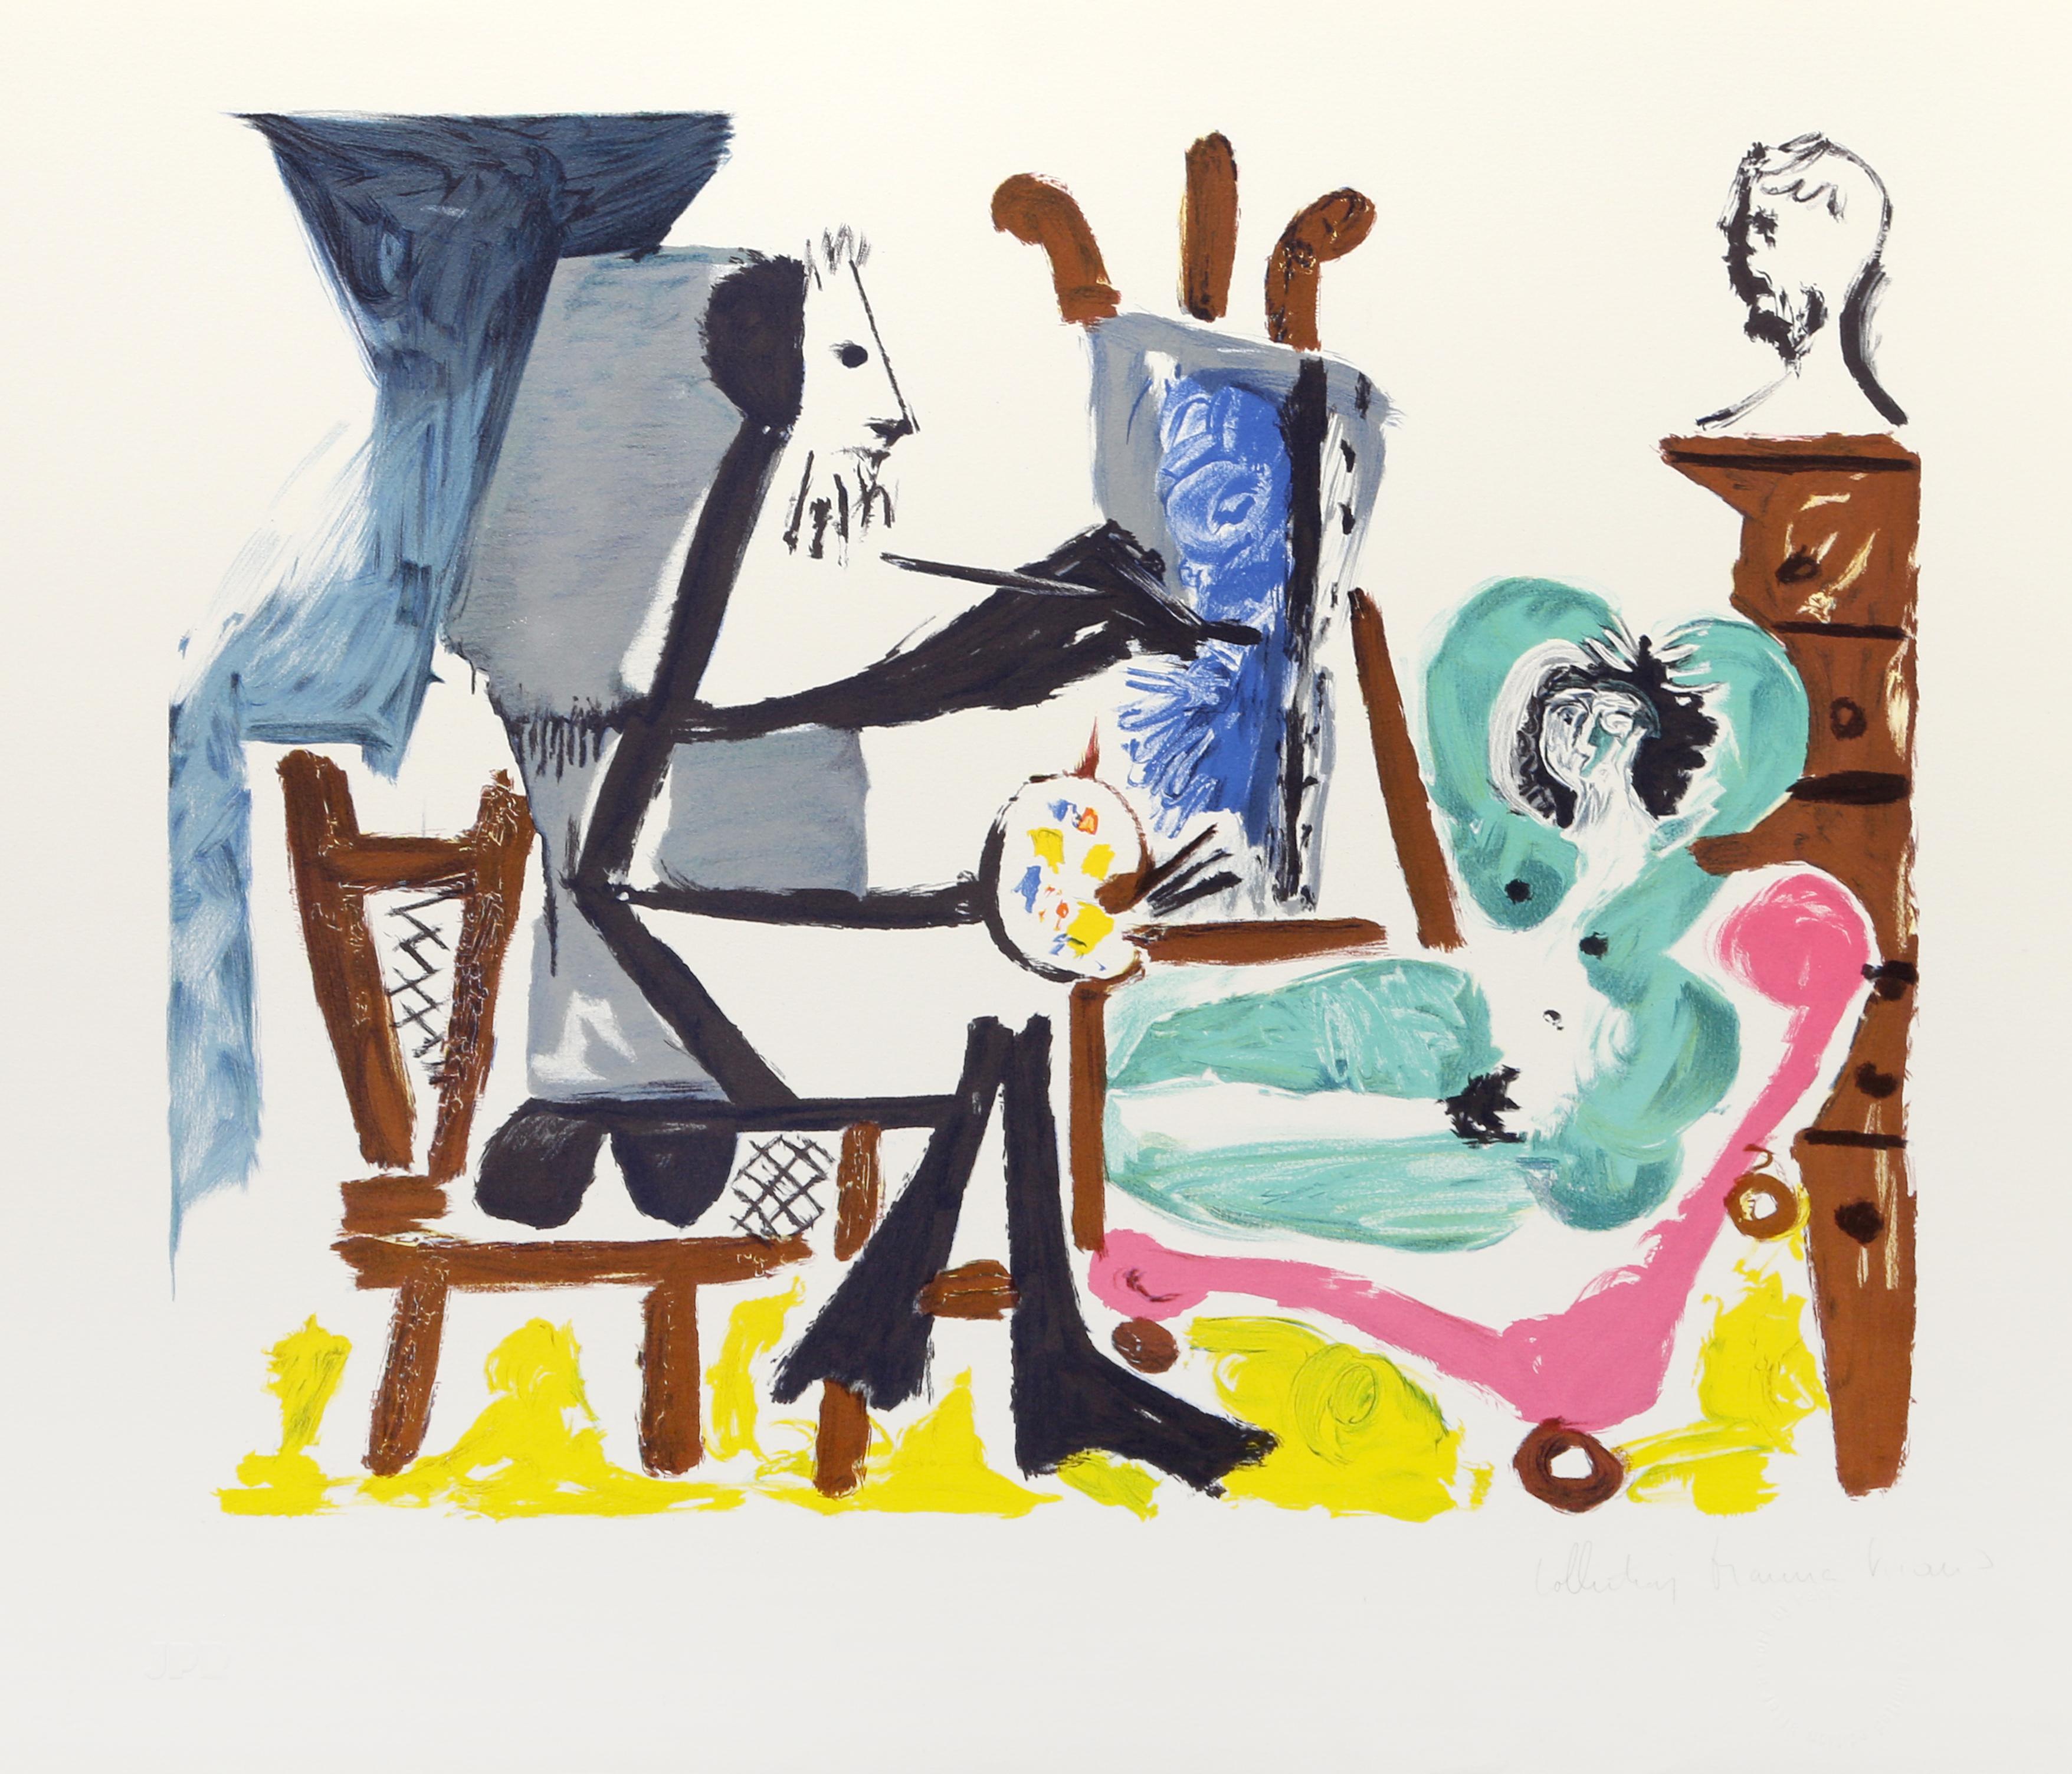 Der Druck von Pablo Picasso zeigt einen Maler in seinem Studio, der das Bildnis einer nackten Frau auf einem Sofa oder einer Chaiselongue festhält. Der Maler sitzt an seiner Staffelei und trägt blaue Farbe auf seine Leinwand auf, während die Frau